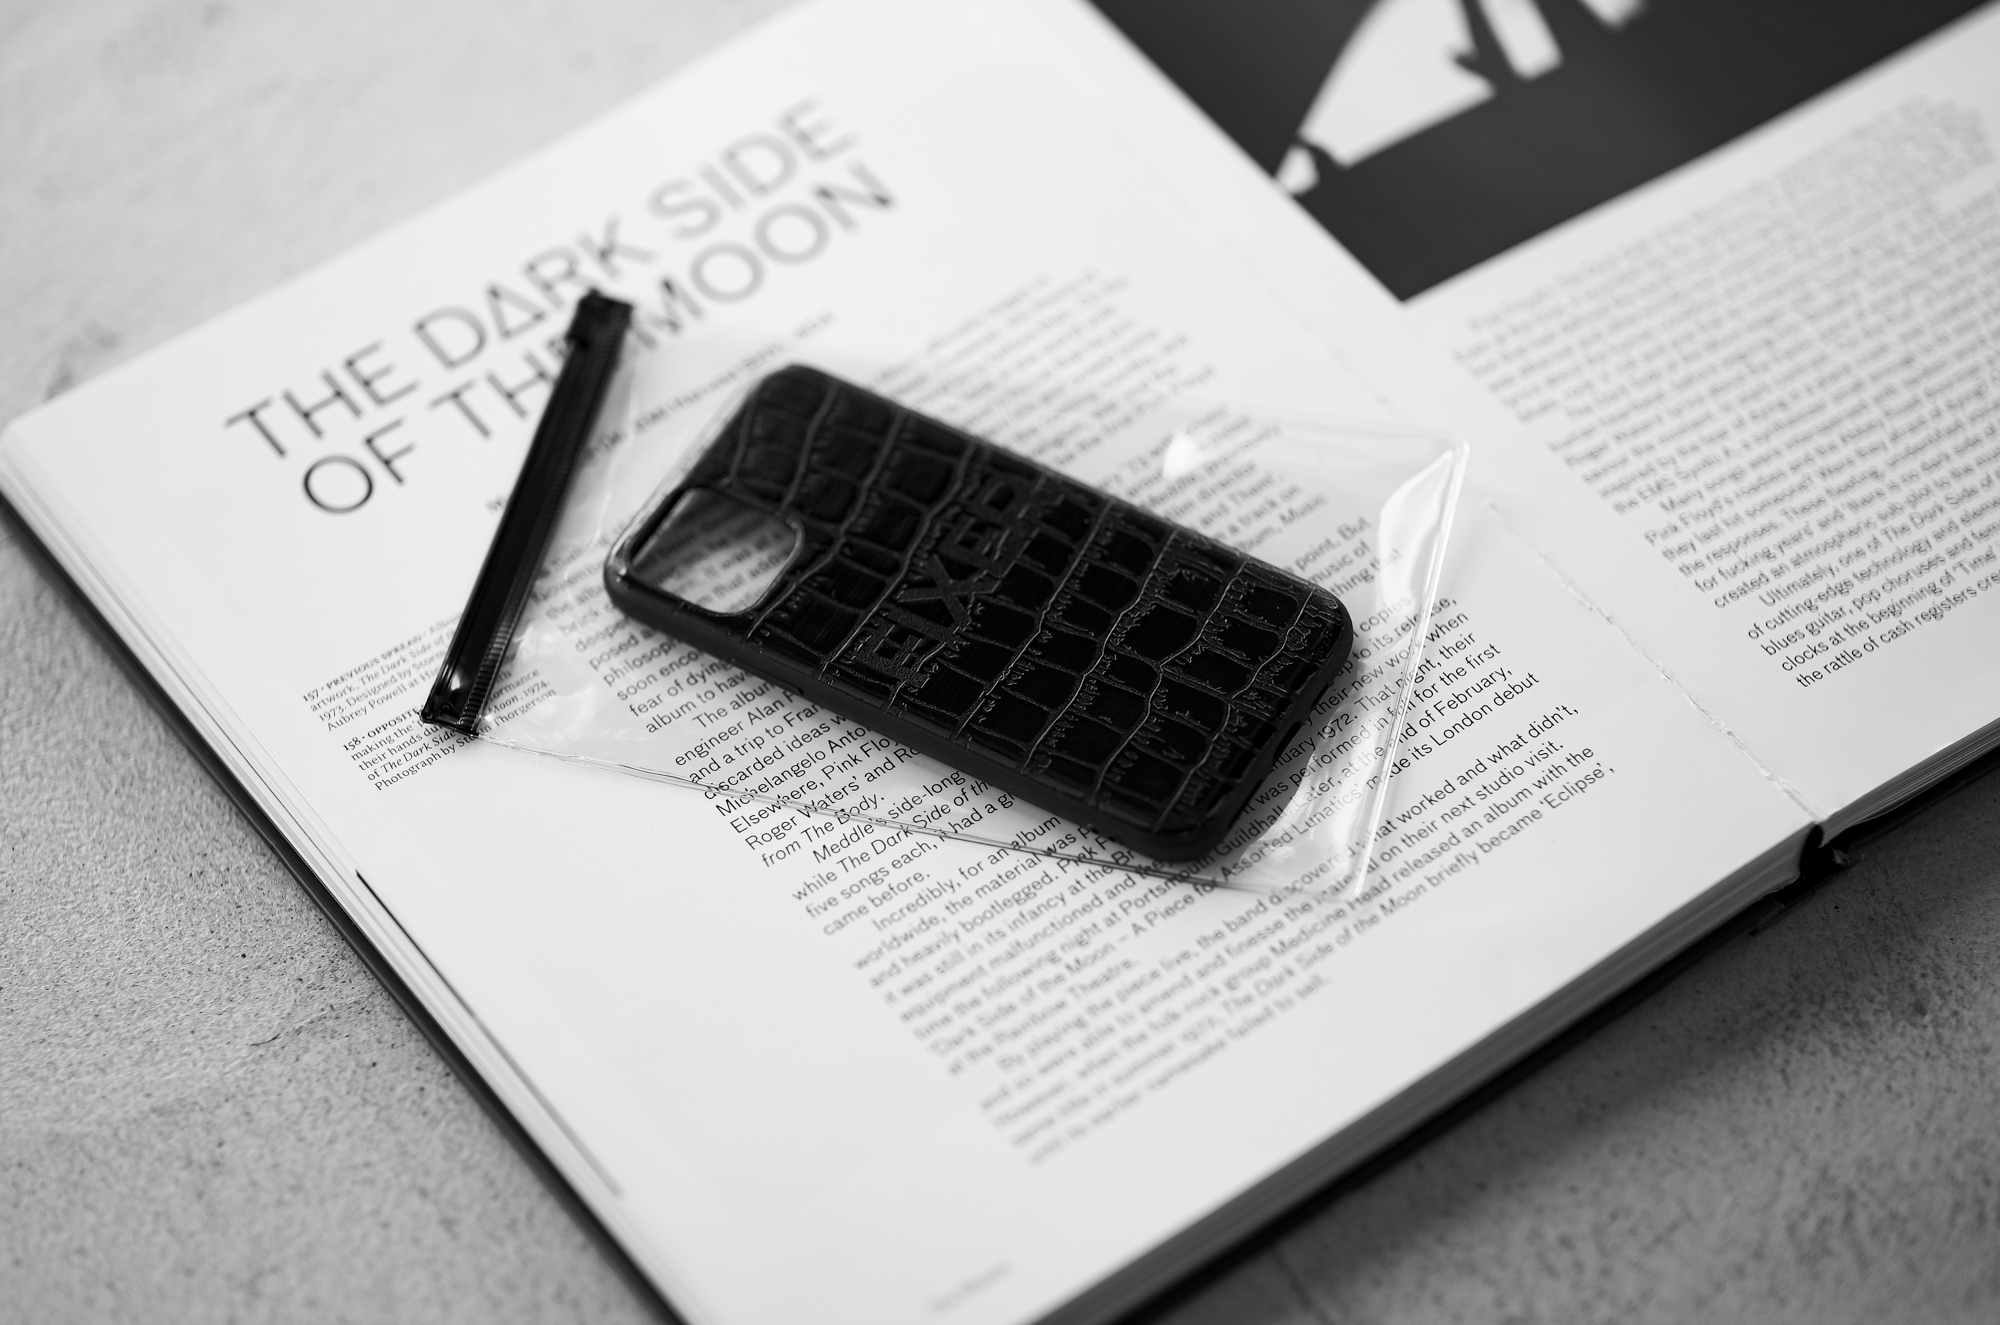 FIXER "iPhone 11Pro Crocodile Case" ALL BLACK フィクサー アイフォンケース 携帯ケース ノーマルケース クロコダイルケース ブラック ブラック ホワイト オールブラック 愛知 名古屋 Alto e Diritto altoediritto アルトエデリット